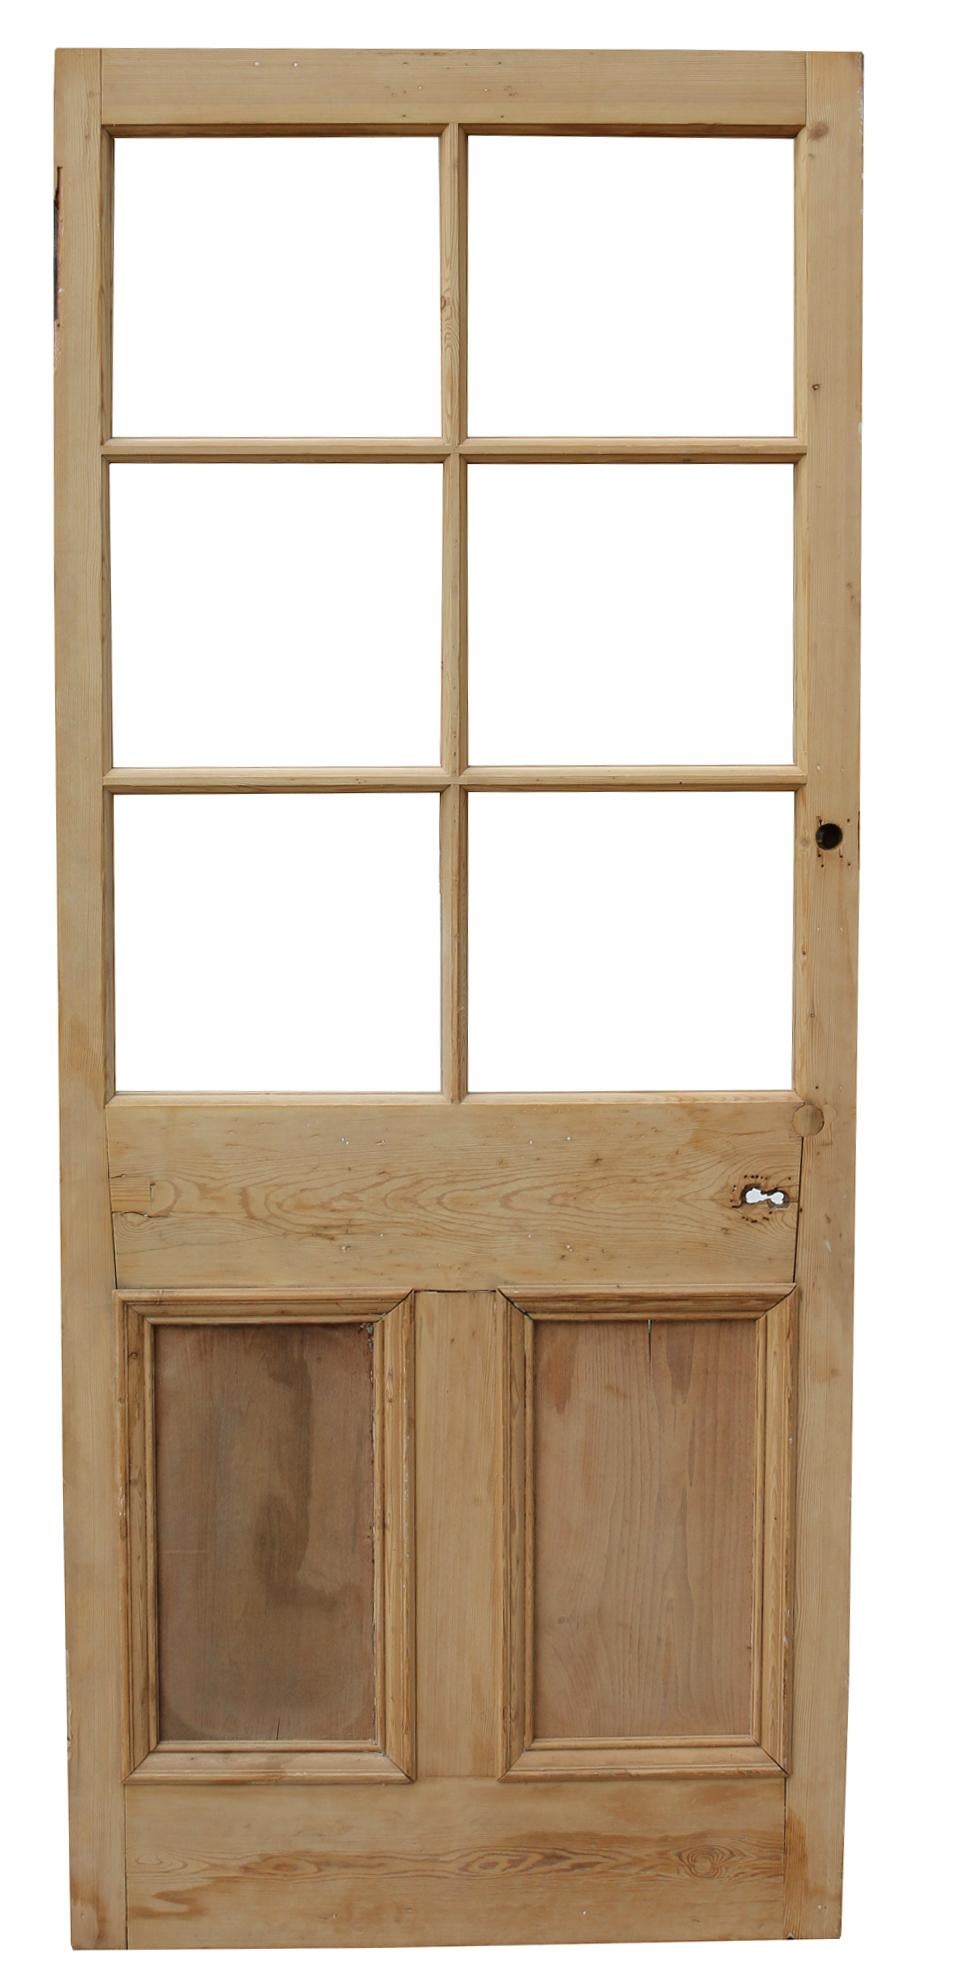 19th Century Reclaimed Glazed Wooden Pine Door For Sale